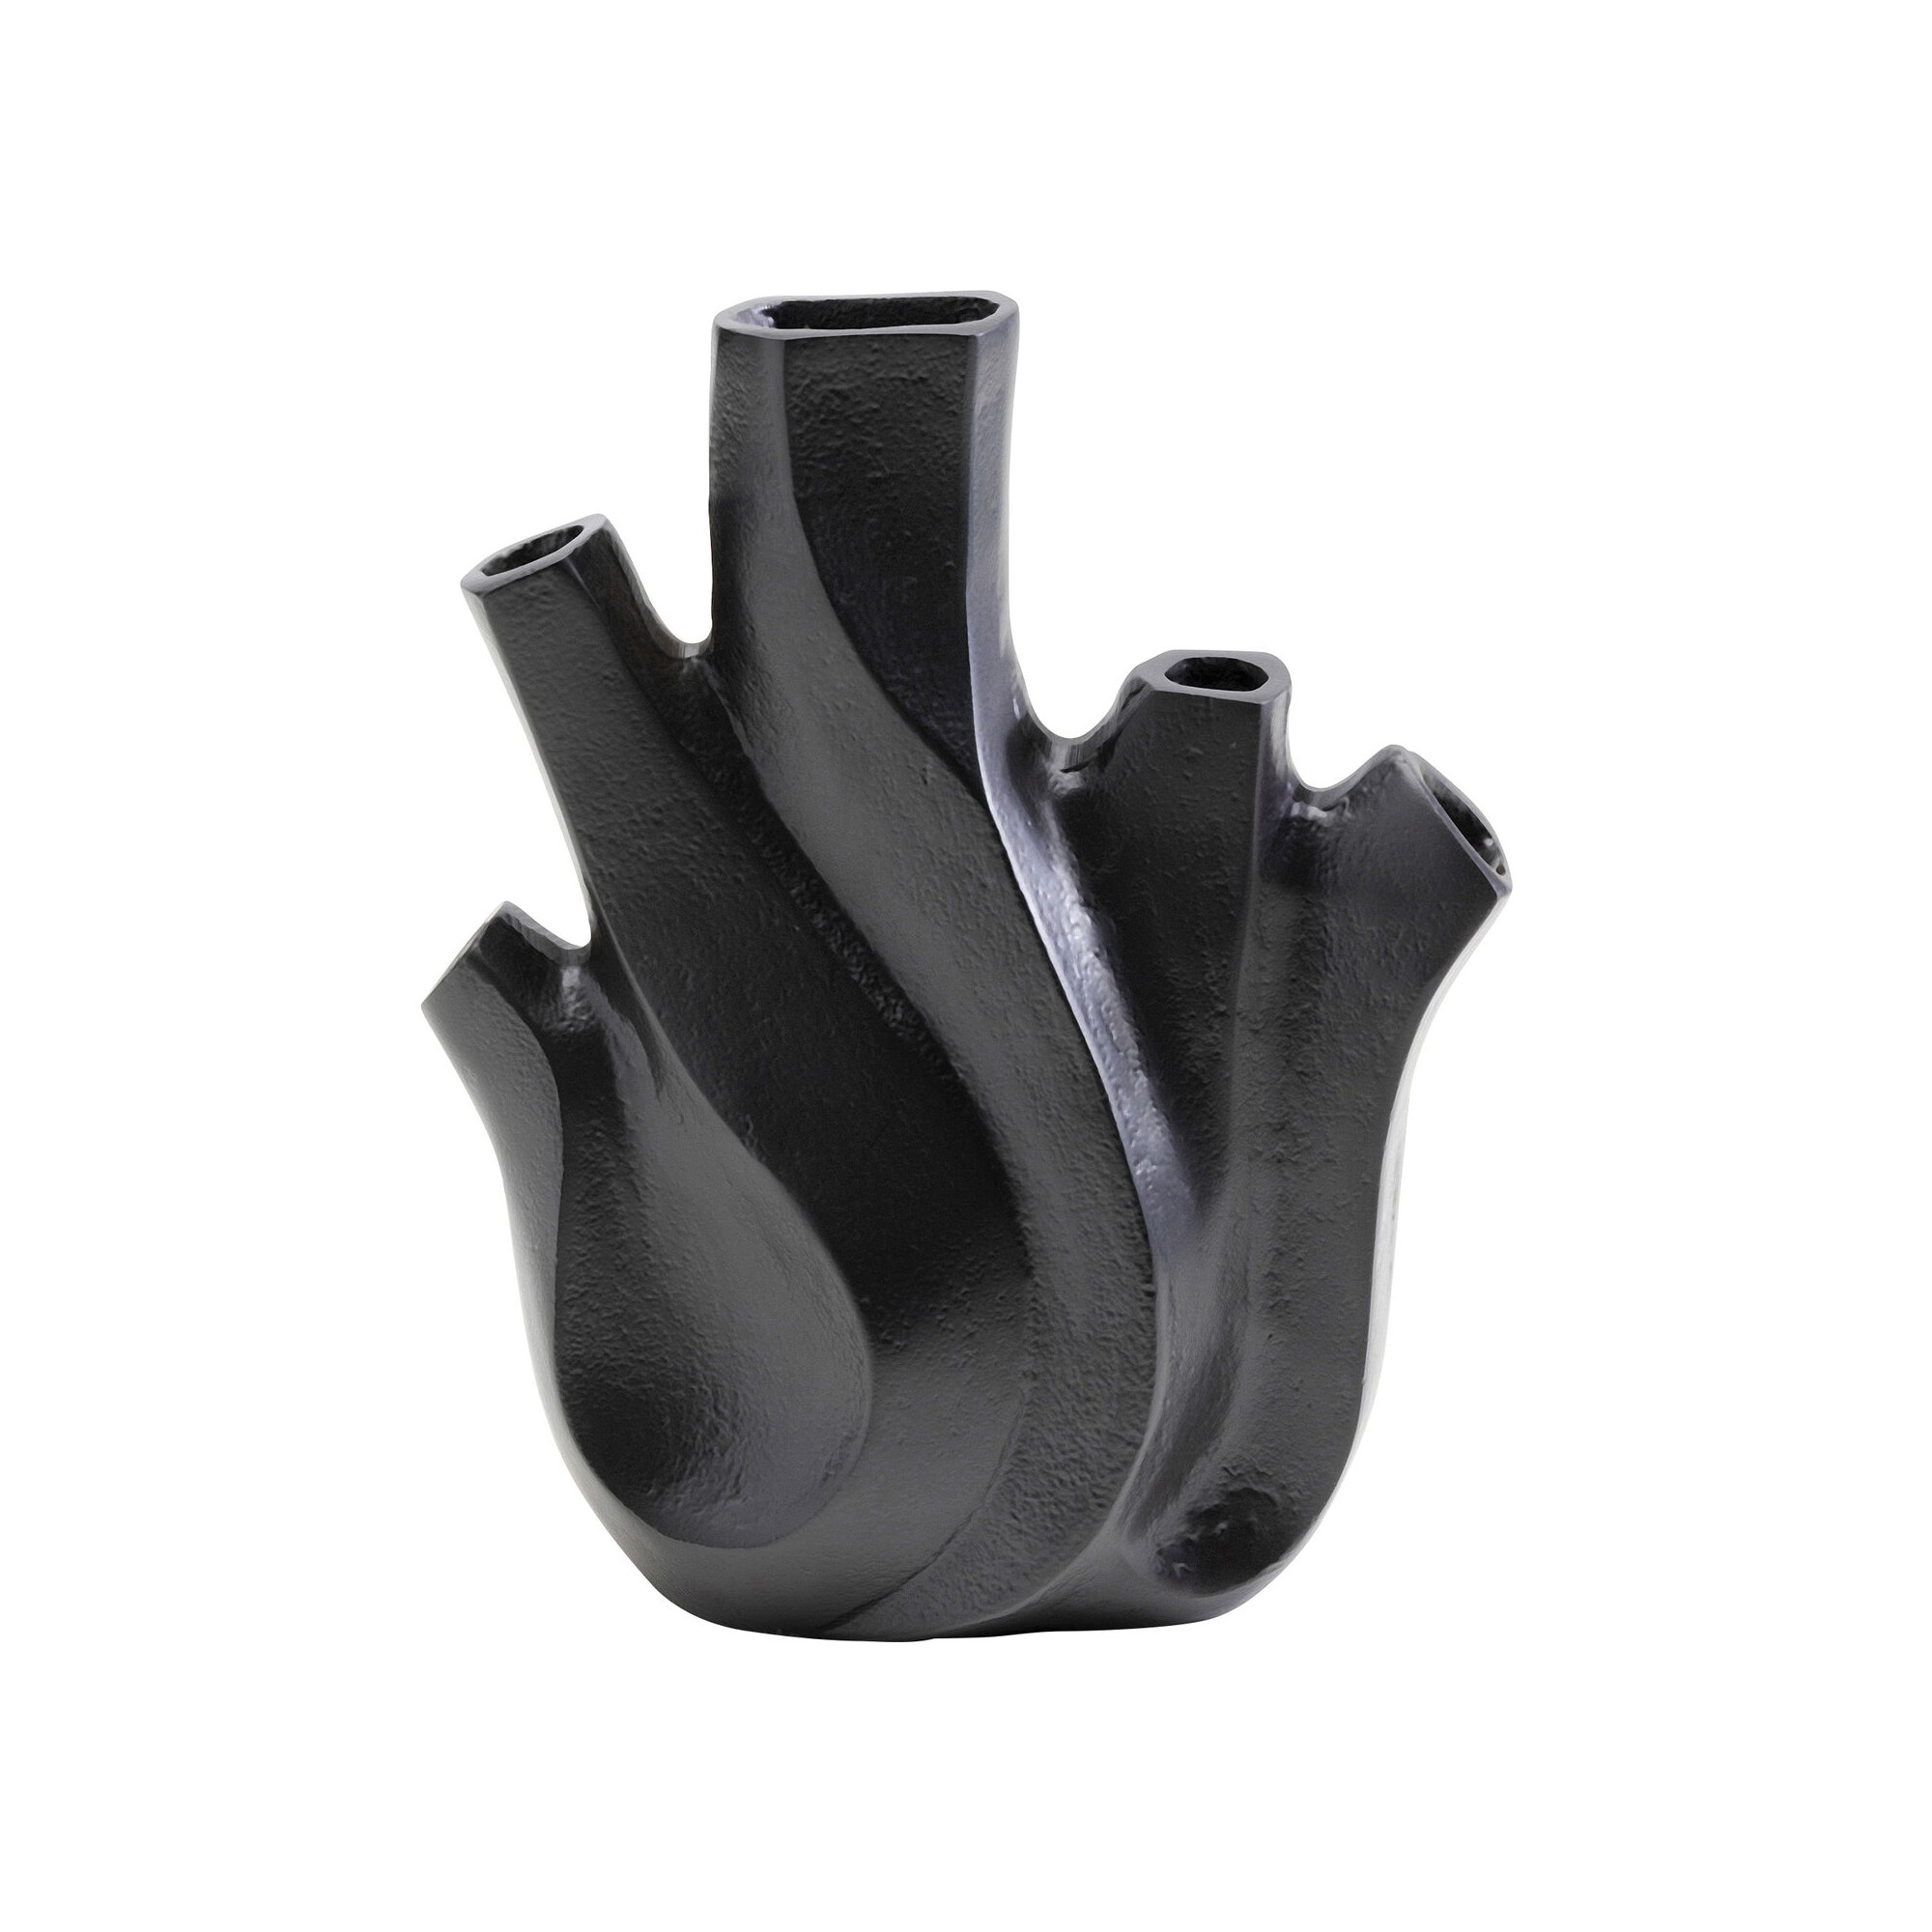 Vase Flame noir 25cm